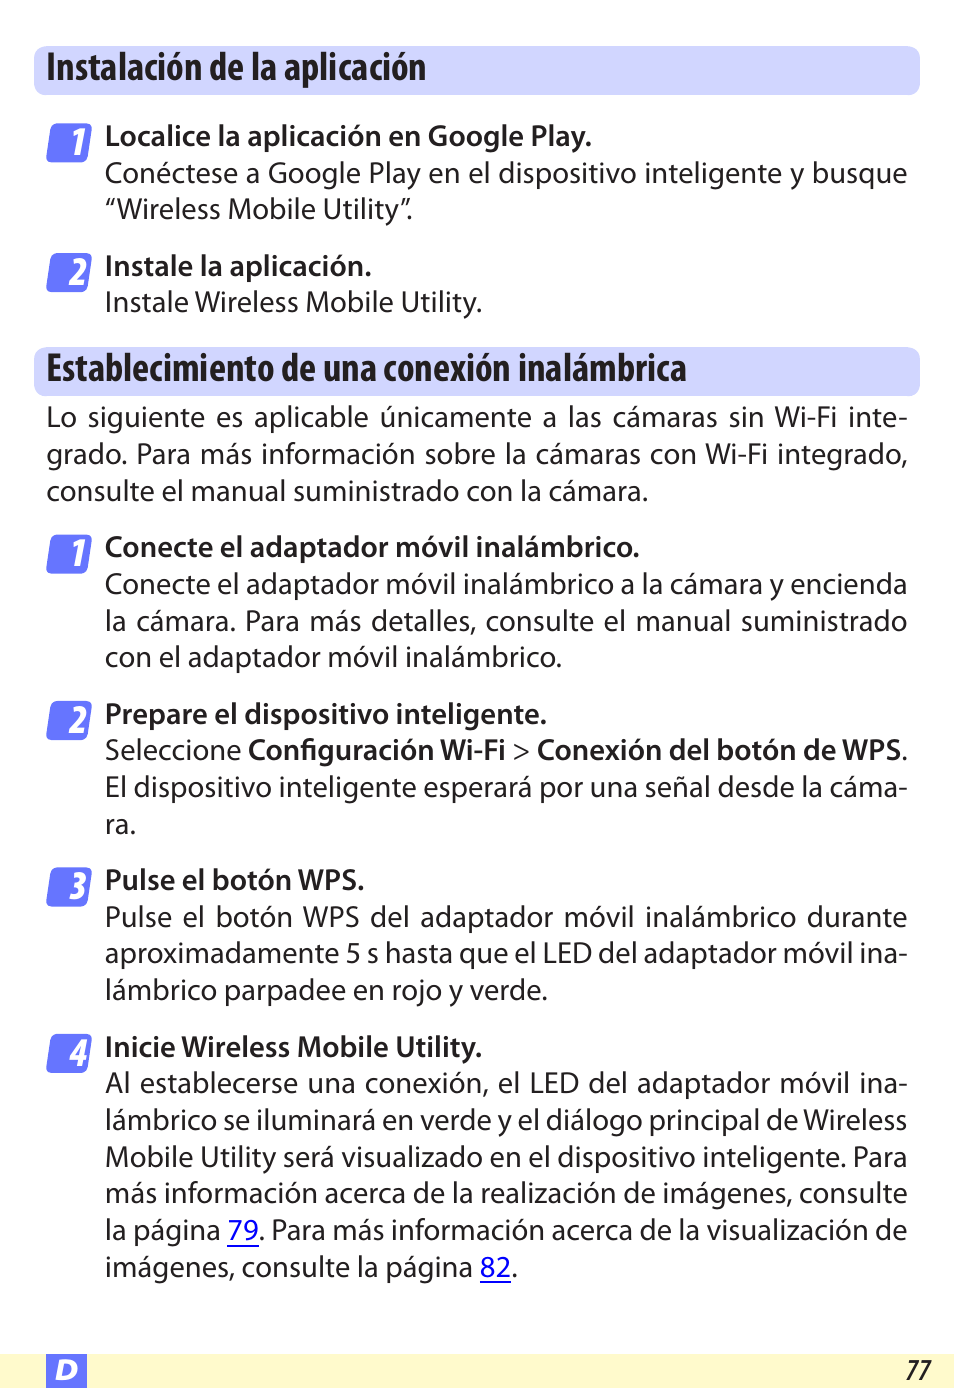 Instalación de la aplicación, Establecimiento de una conexión inalámbrica | Nikon Wireless-Mobile-Utility Manual del usuario | Página 77 / 97